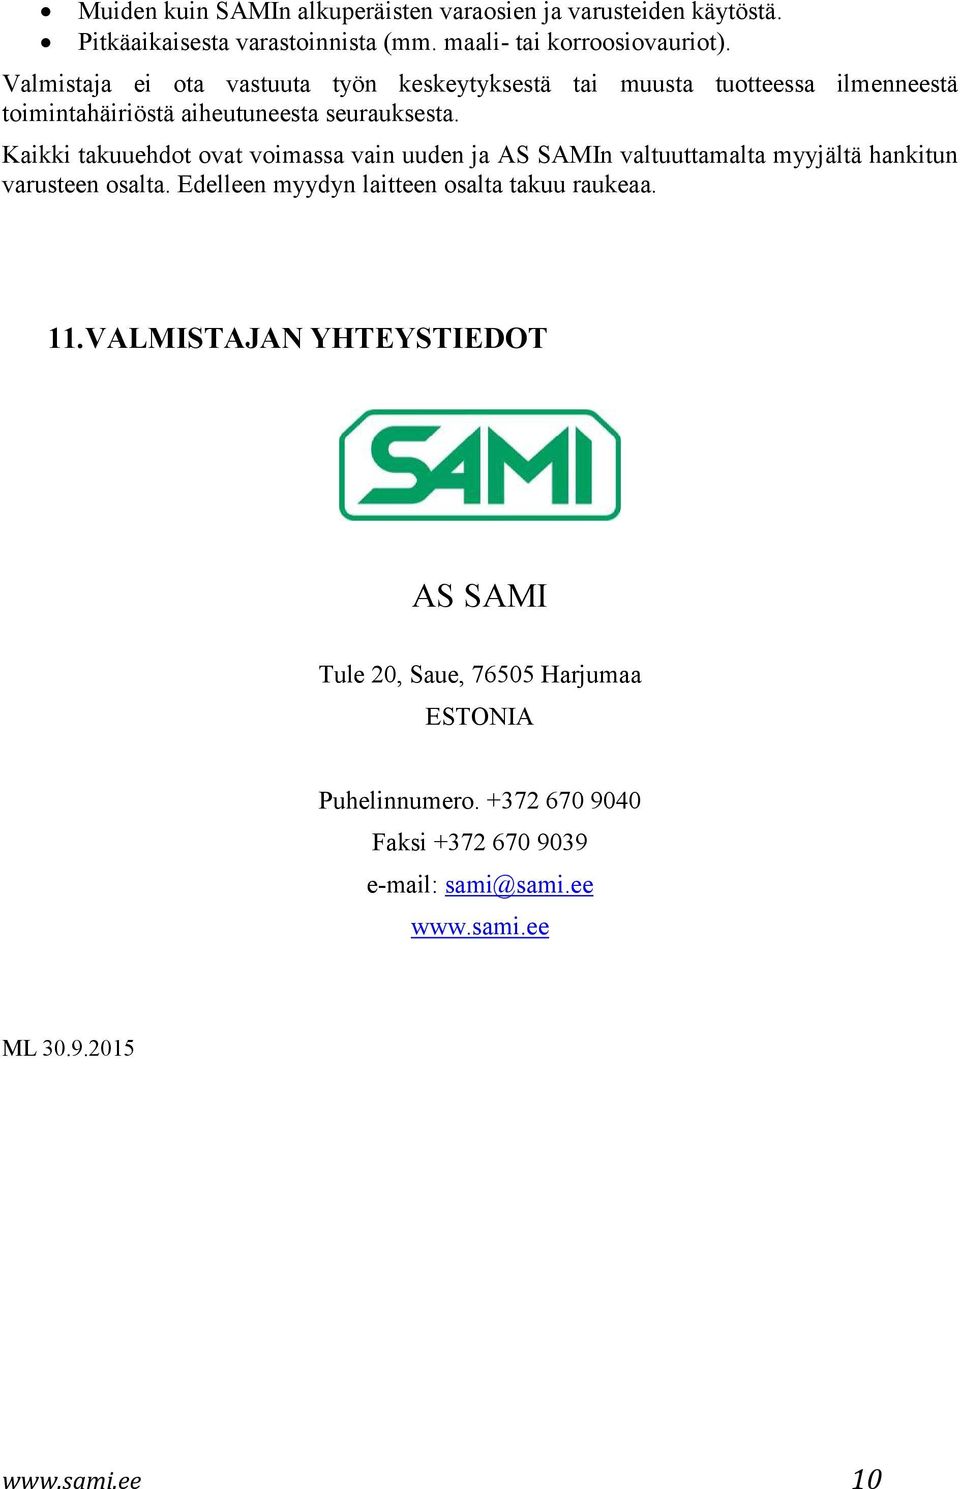 Kaikki takuuehdot ovat voimassa vain uuden ja AS SAMIn valtuuttamalta myyjältä hankitun varusteen osalta.